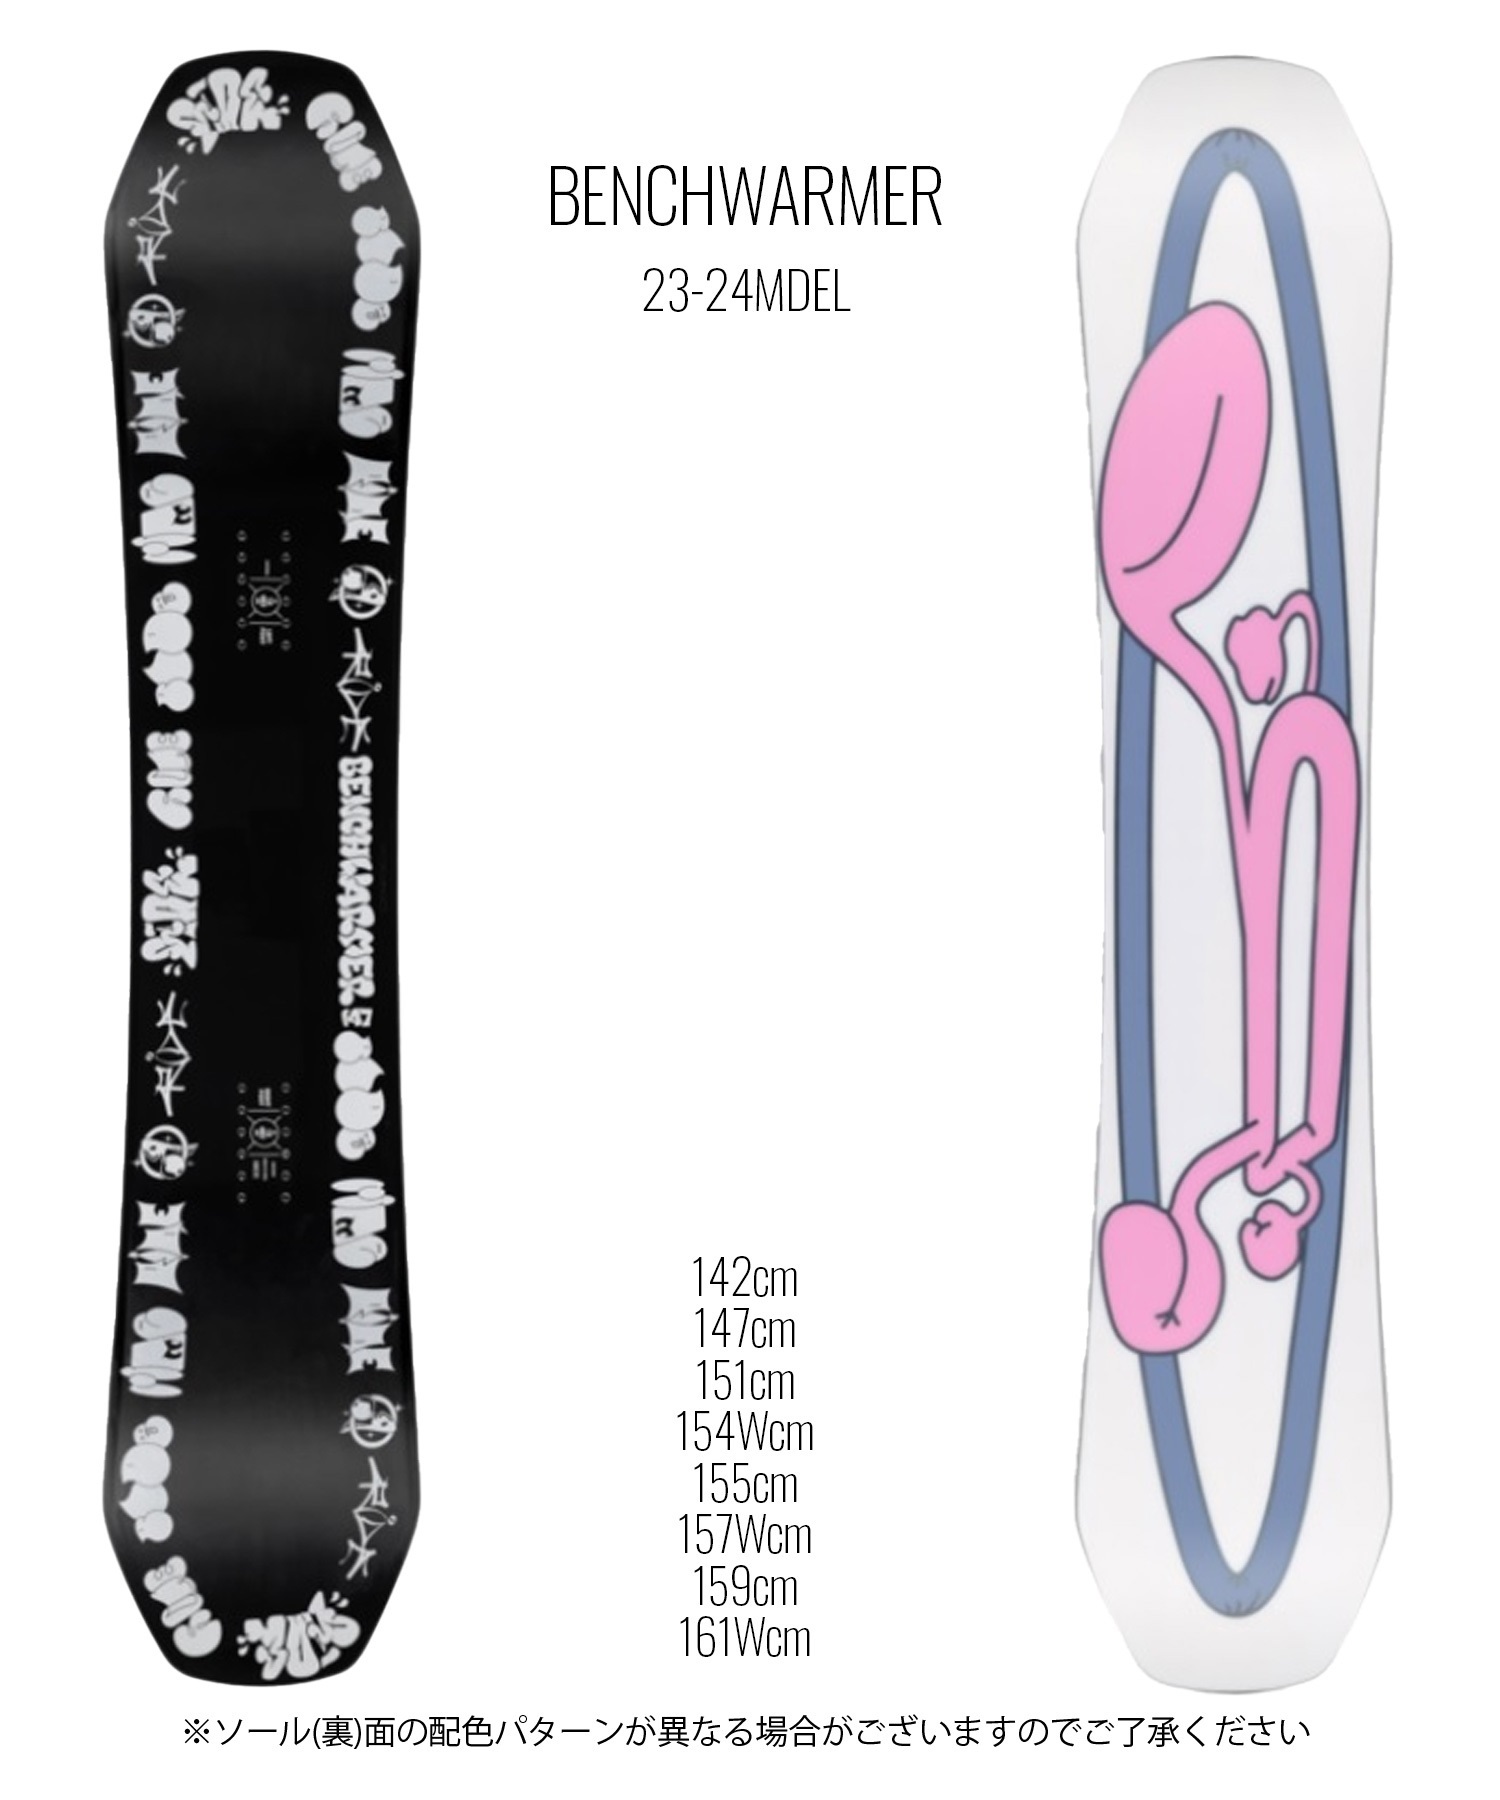 スノーボード 板 メンズ RIDE ライド BENCHWARMER R230200501 23-24モデル ムラサキスポーツ KK J20(ONECOLOR-142cm)